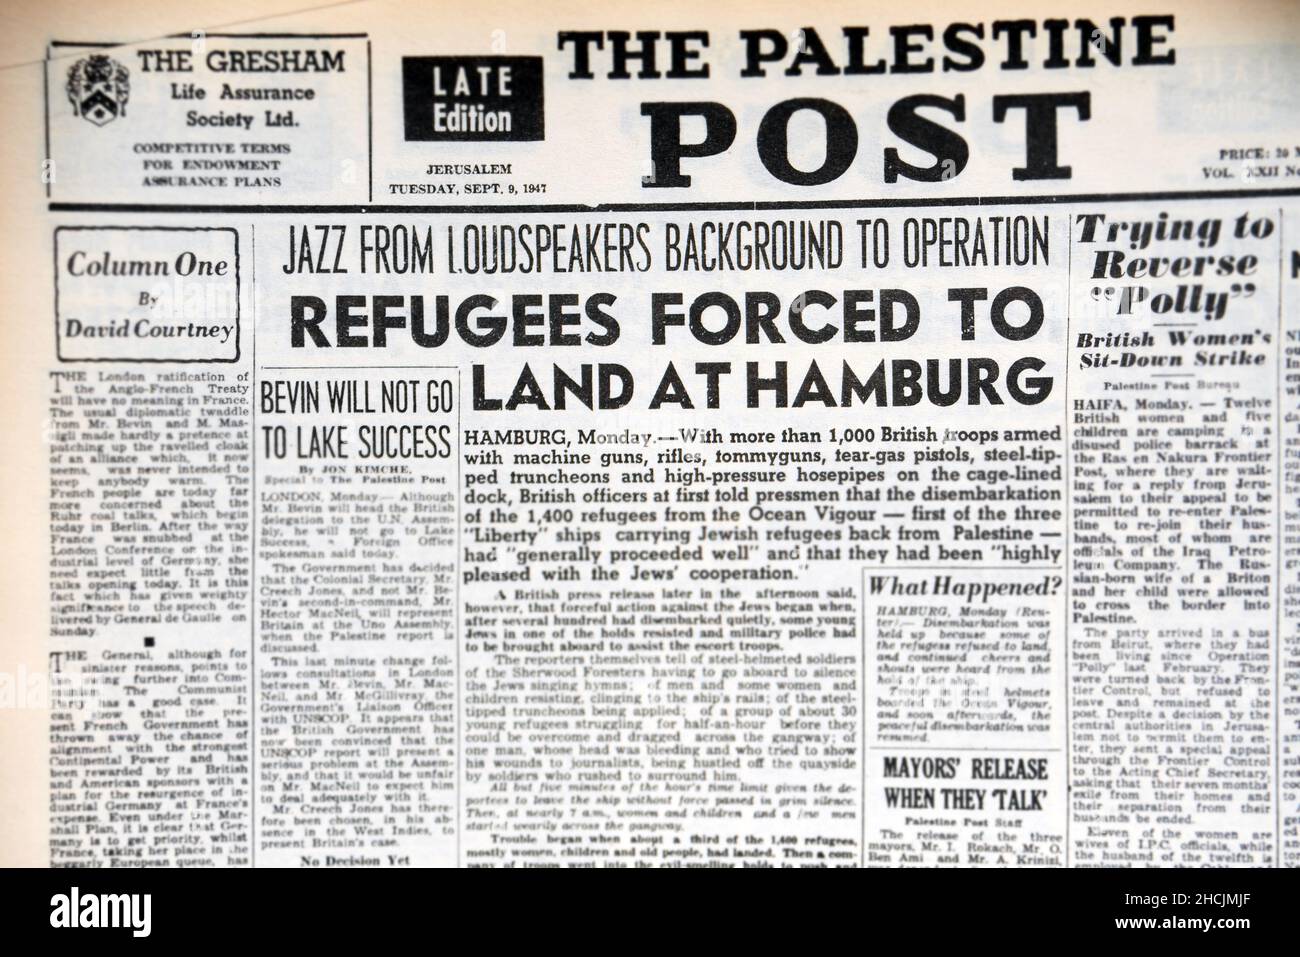 Schlagzeile der israelischen Zeitung mit einem historischen Ereignis - Flüchtlinge nach Hamburg zurückgeschickt, 1947 Stockfoto